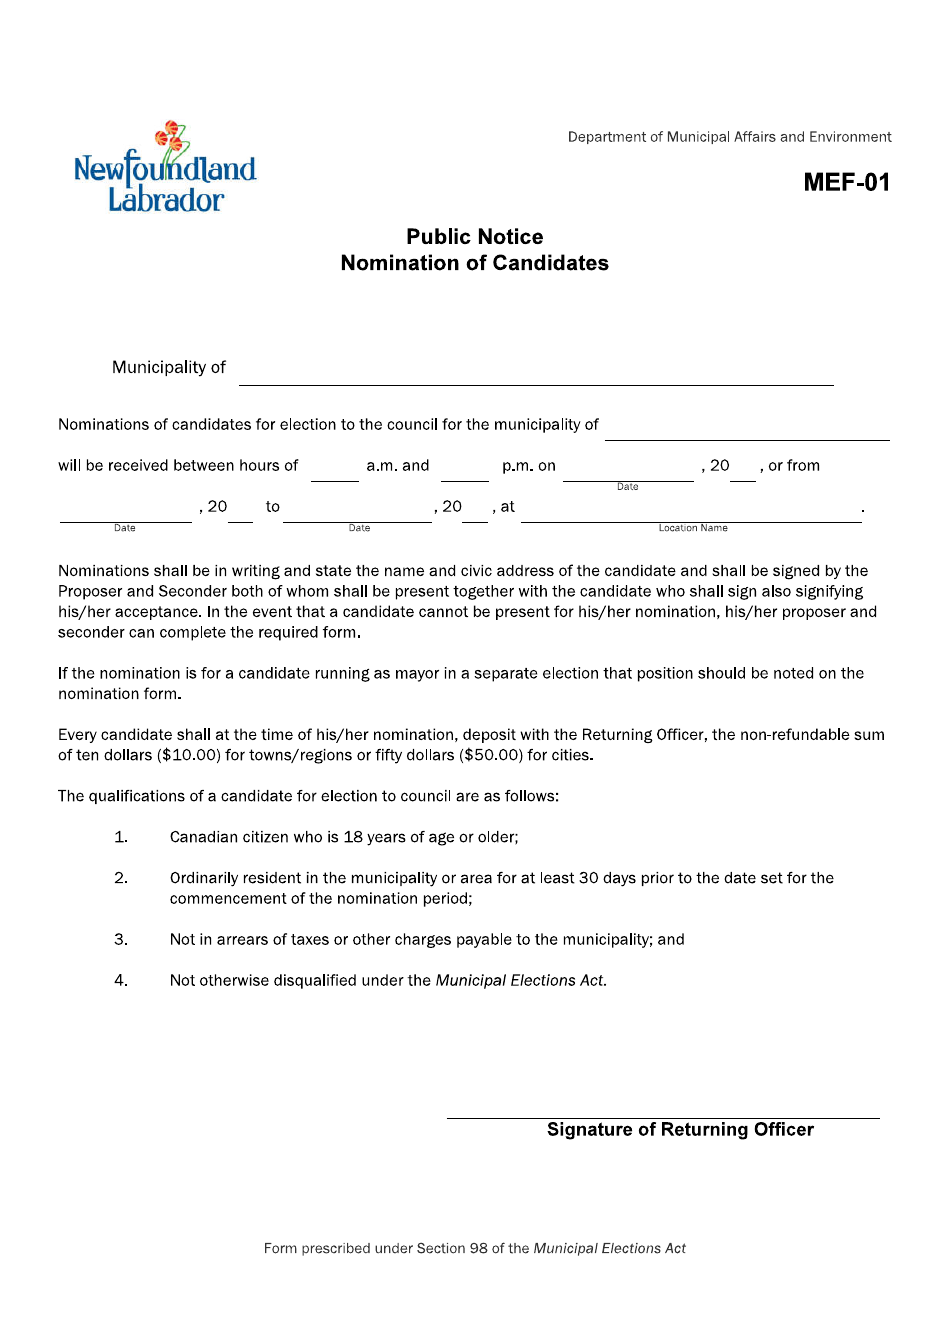 Form MEF-01 Public Notice Nomination of Candidates - Newfoundland and Labrador, Canada, Page 1